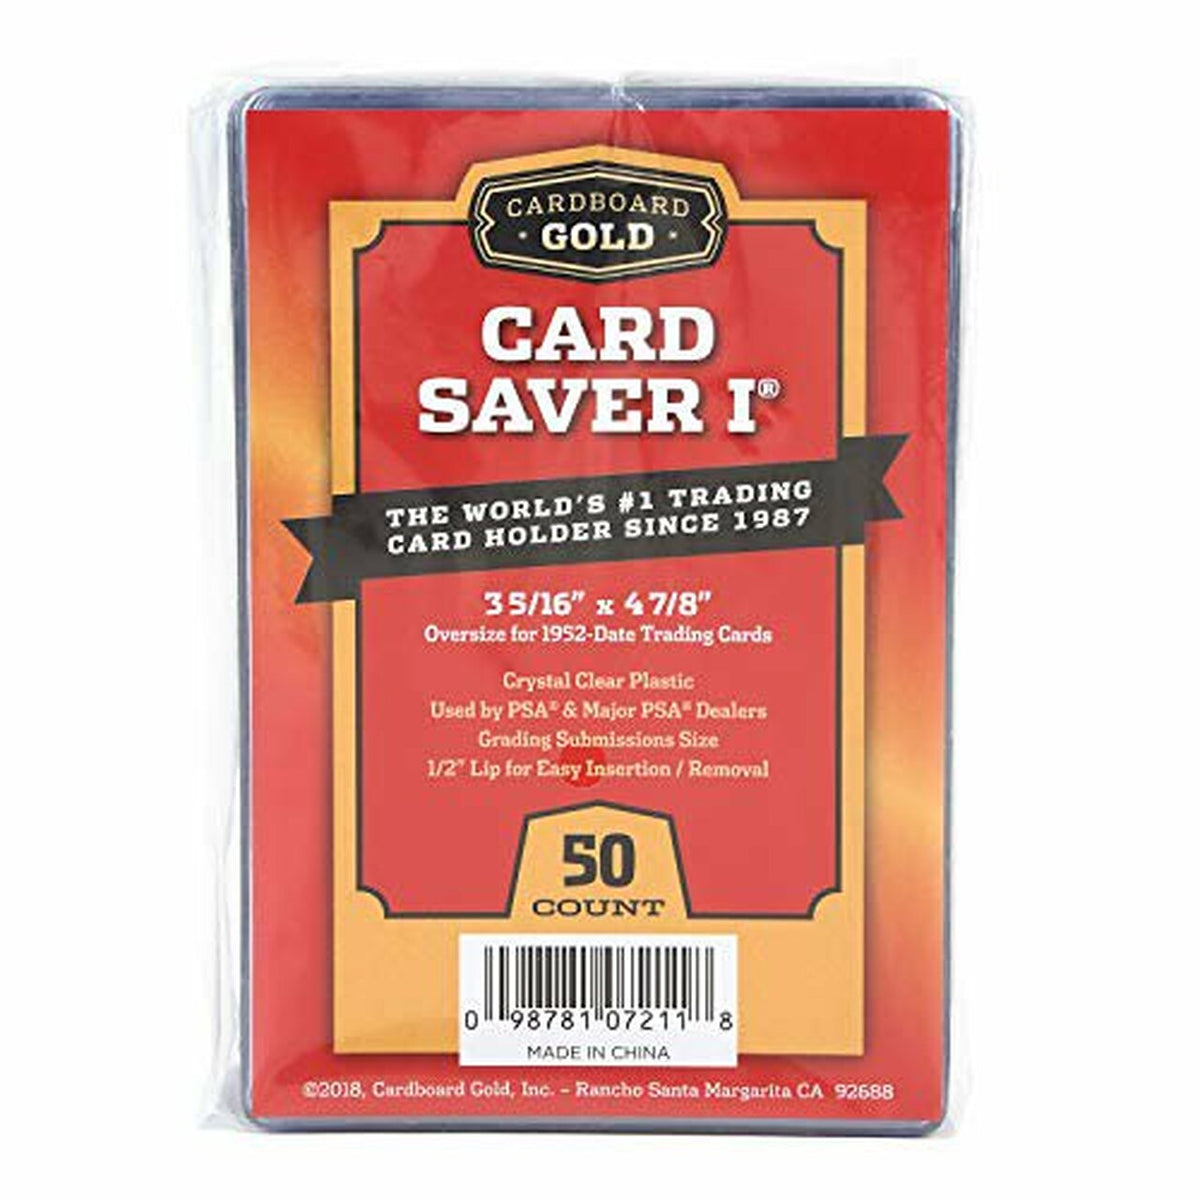 Cardboard Gold &quot;Card Saver 1&quot; Semi-Rigid Card Holder (3 5/16&quot; x 4 7/8&quot;)